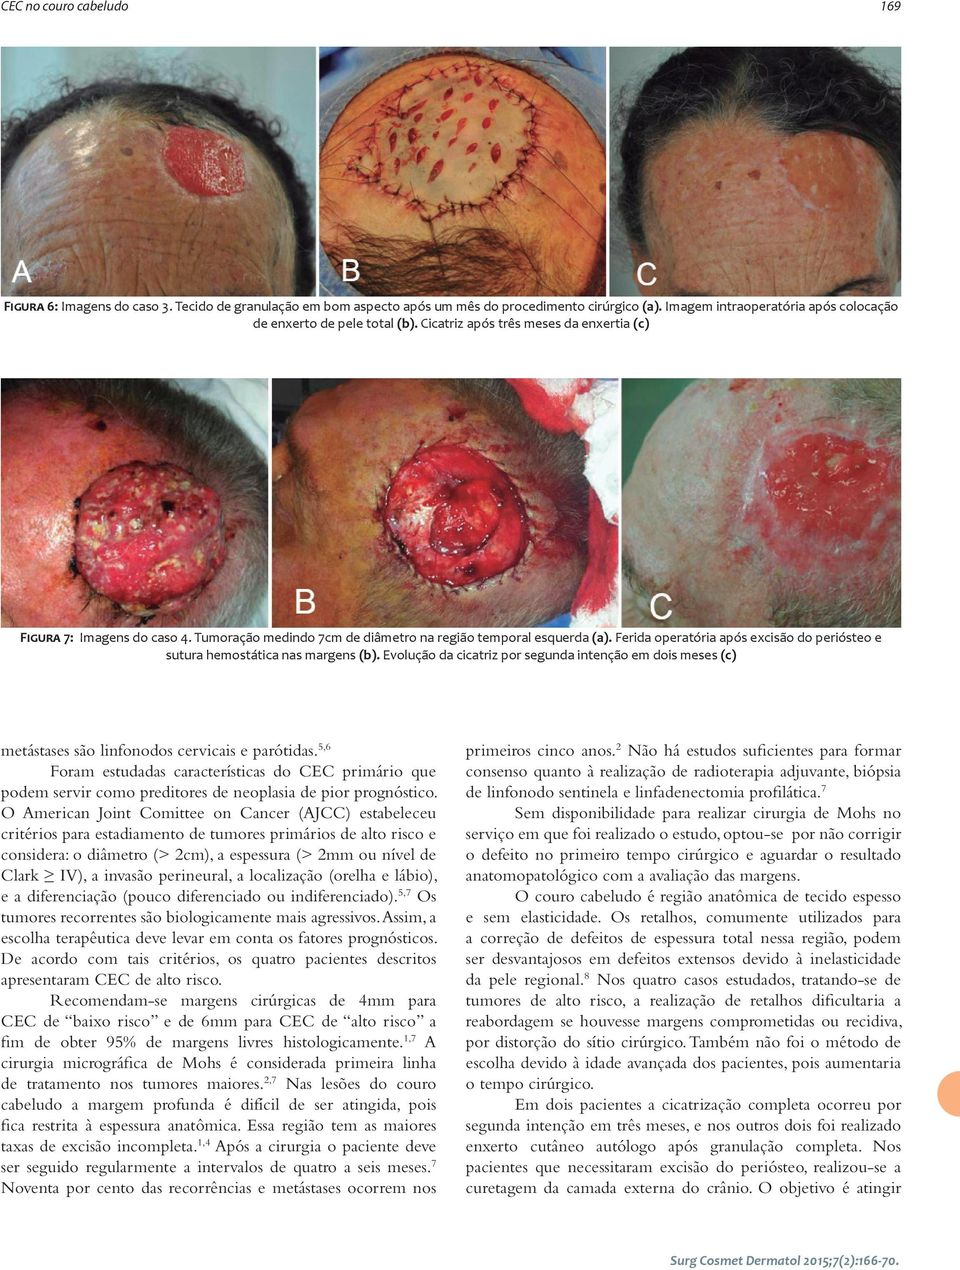 Ferida operatória após excisão do periósteo e sutura hemostática nas margens (b). Evolução da cicatriz por segunda intenção em dois meses (c) metástases são linfonodos cervicais e parótidas.